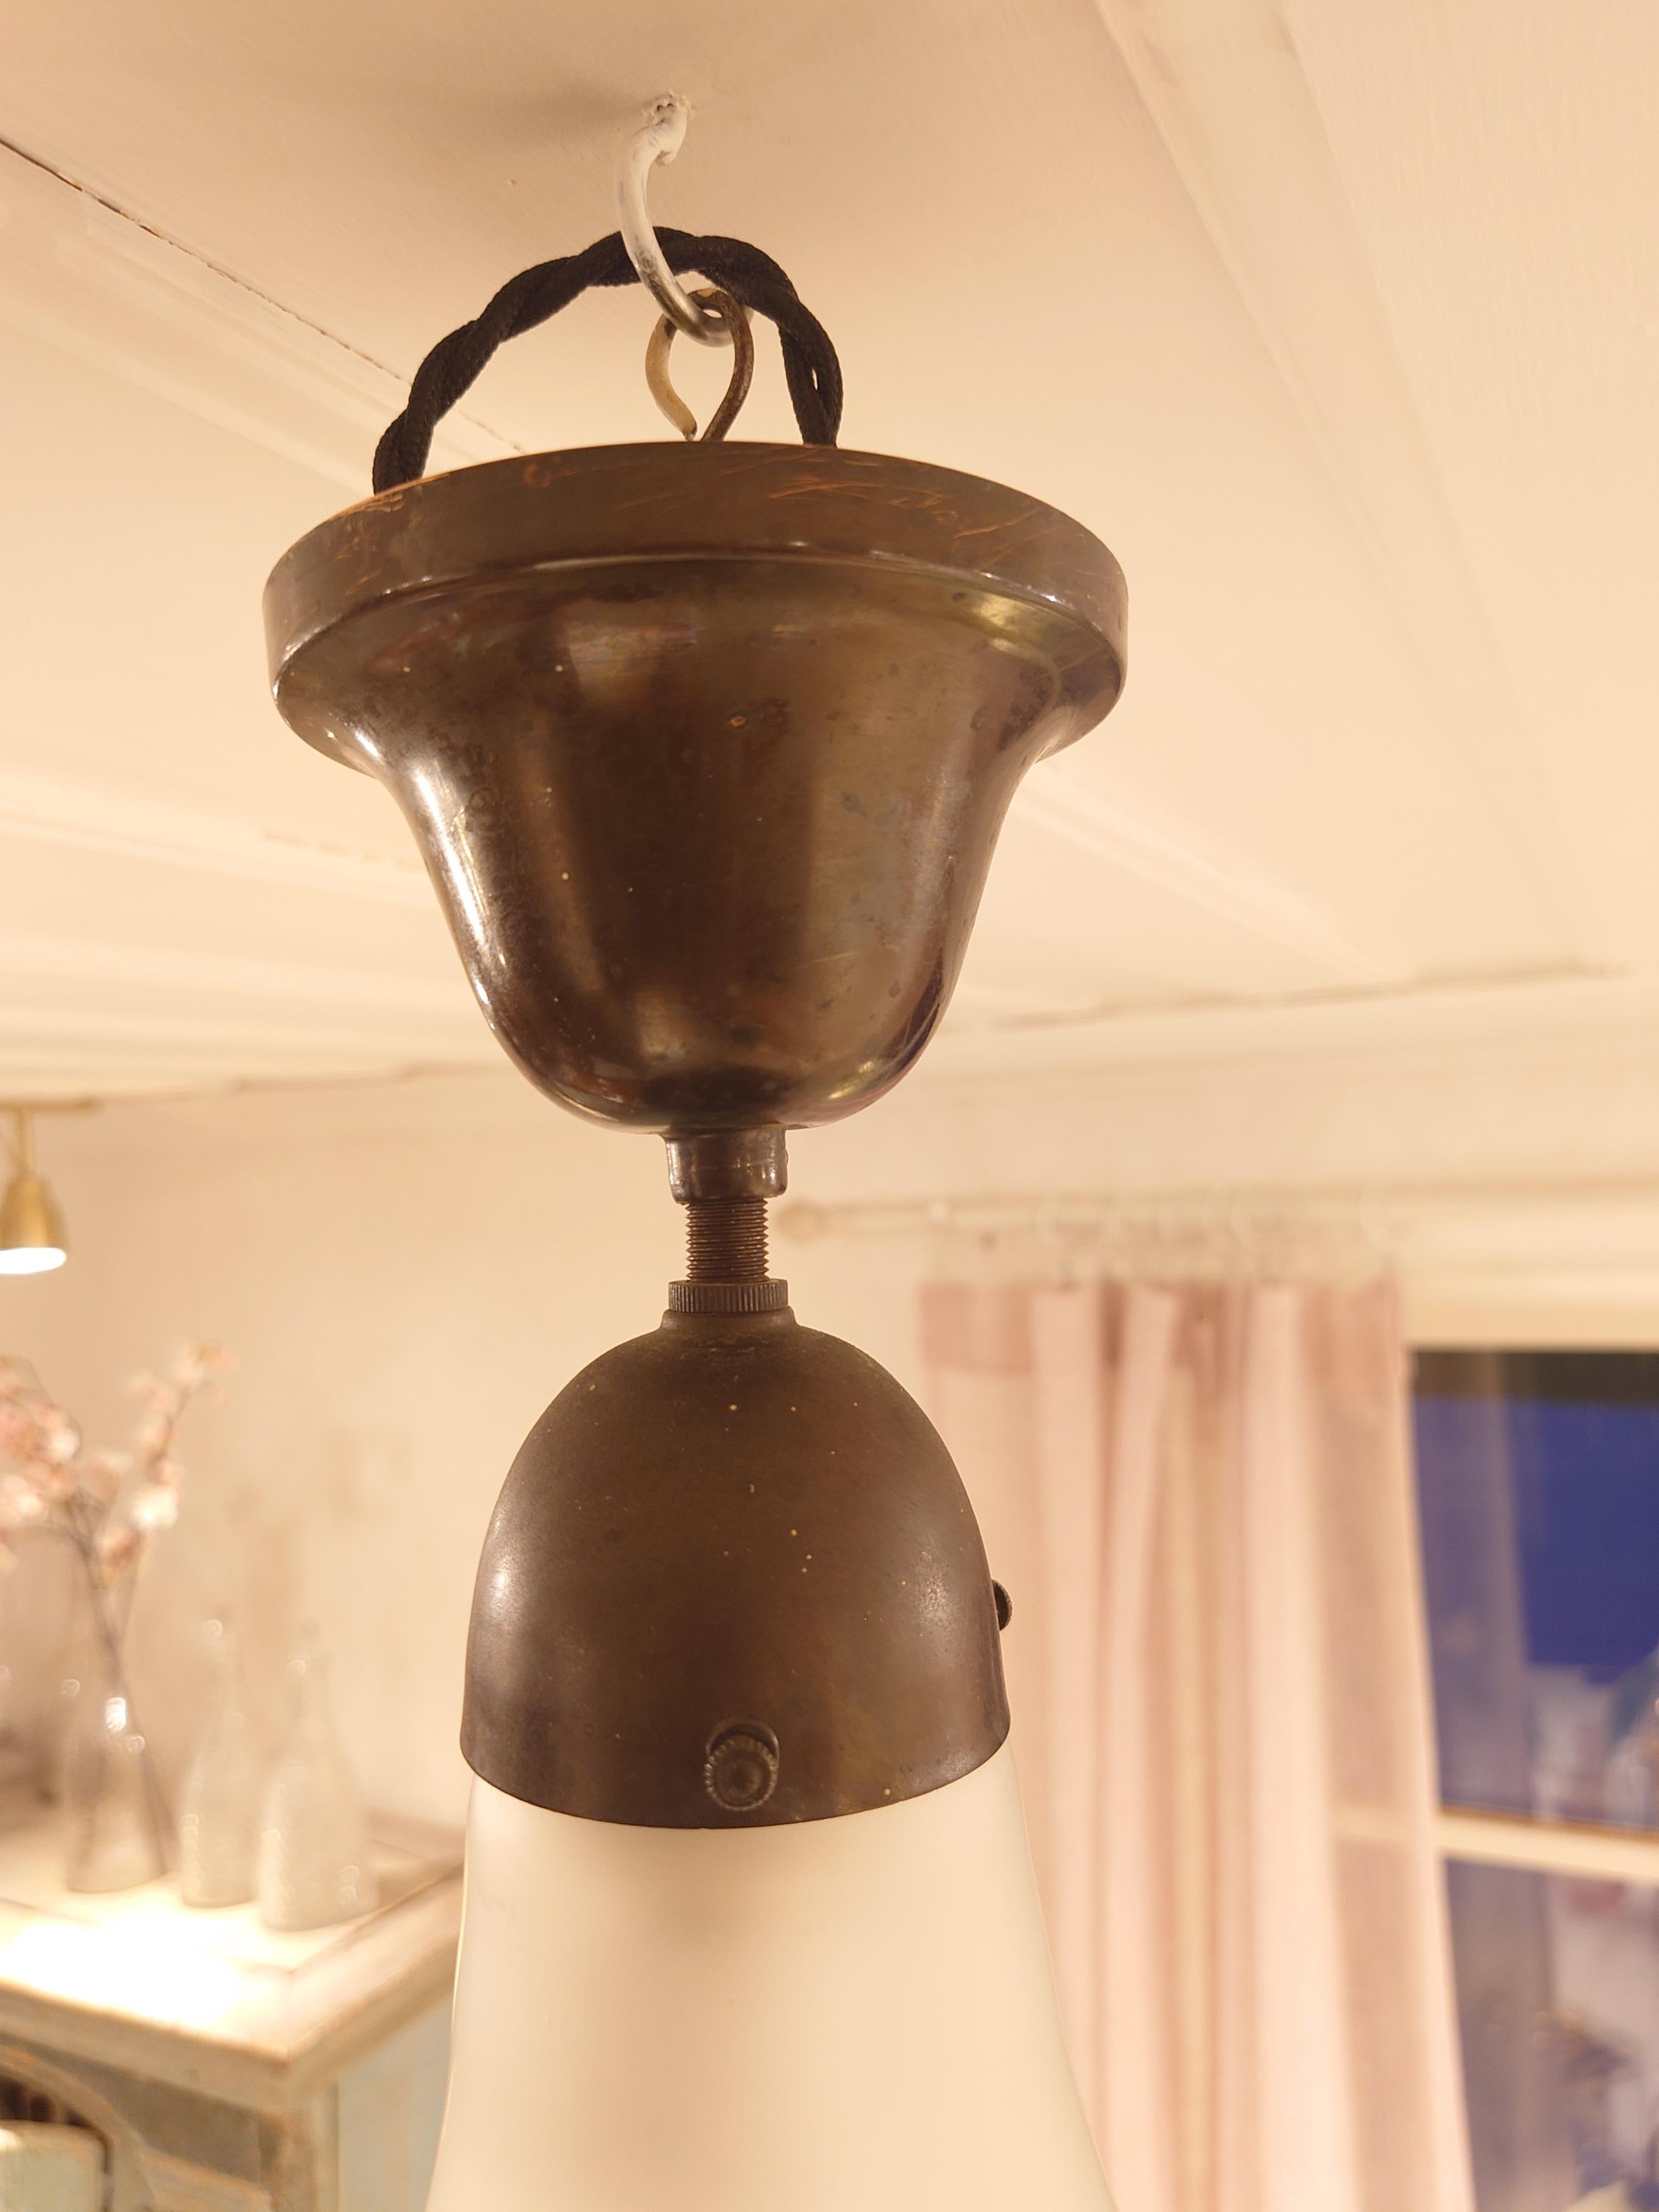 Lampe suspendue Siemens Luzette Art Nouveau Jugendstil allemand de Peter Behrens.
Une très belle lampe suspendue Luzette, fabriquée au début du 20e siècle et conçue par le grand designer Peter Behrens. Il s'agit du plus petit modèle qui mesure 23 cm